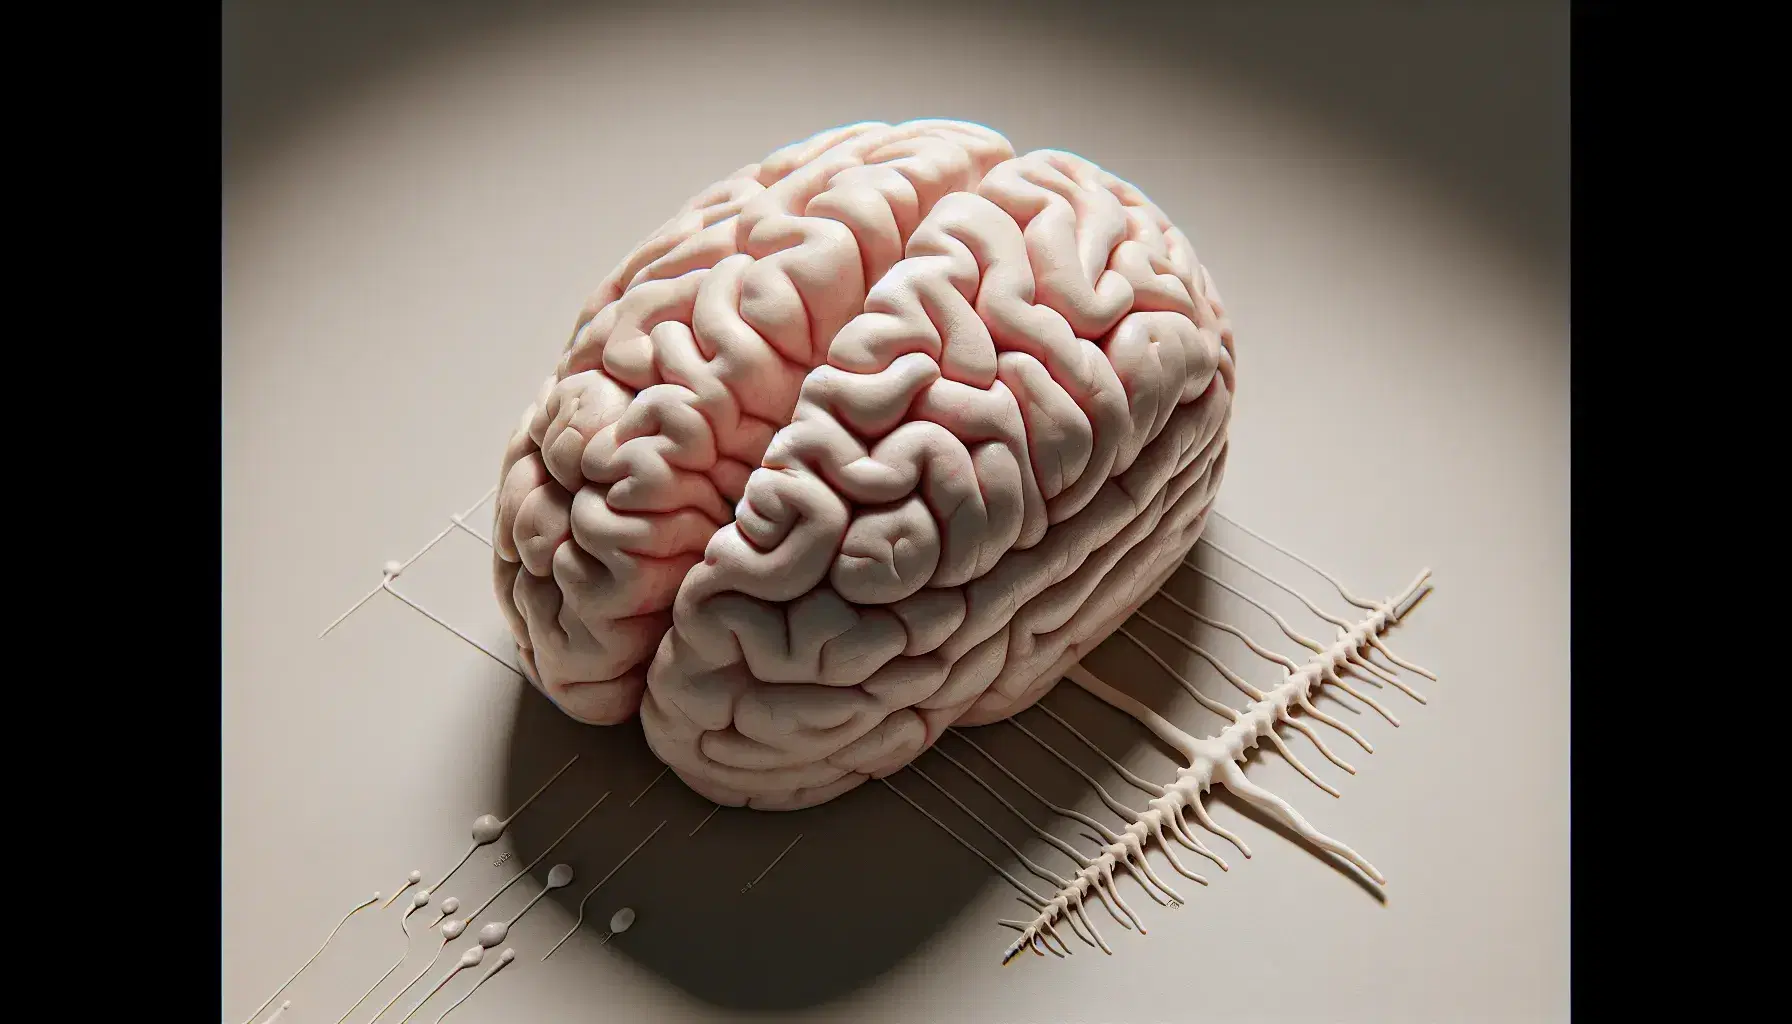 Modelo detallado de cerebro humano visto desde arriba con nervios craneales y tronco encefálico conectado a la médula espinal en superficie neutra.